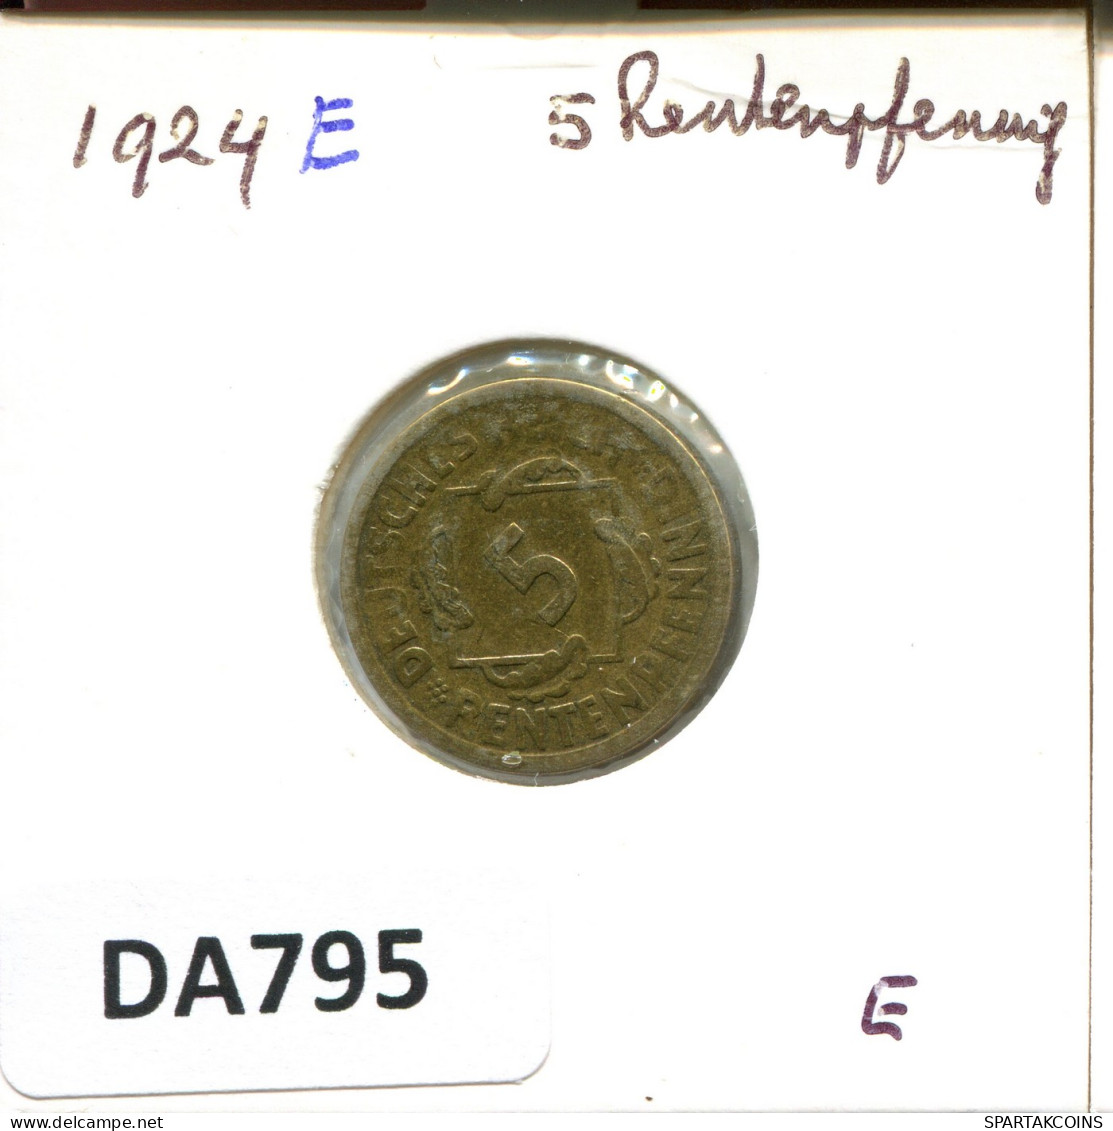 5 RENTENPFENNIG 1924 E ALEMANIA Moneda GERMANY #DA795.E - 5 Rentenpfennig & 5 Reichspfennig